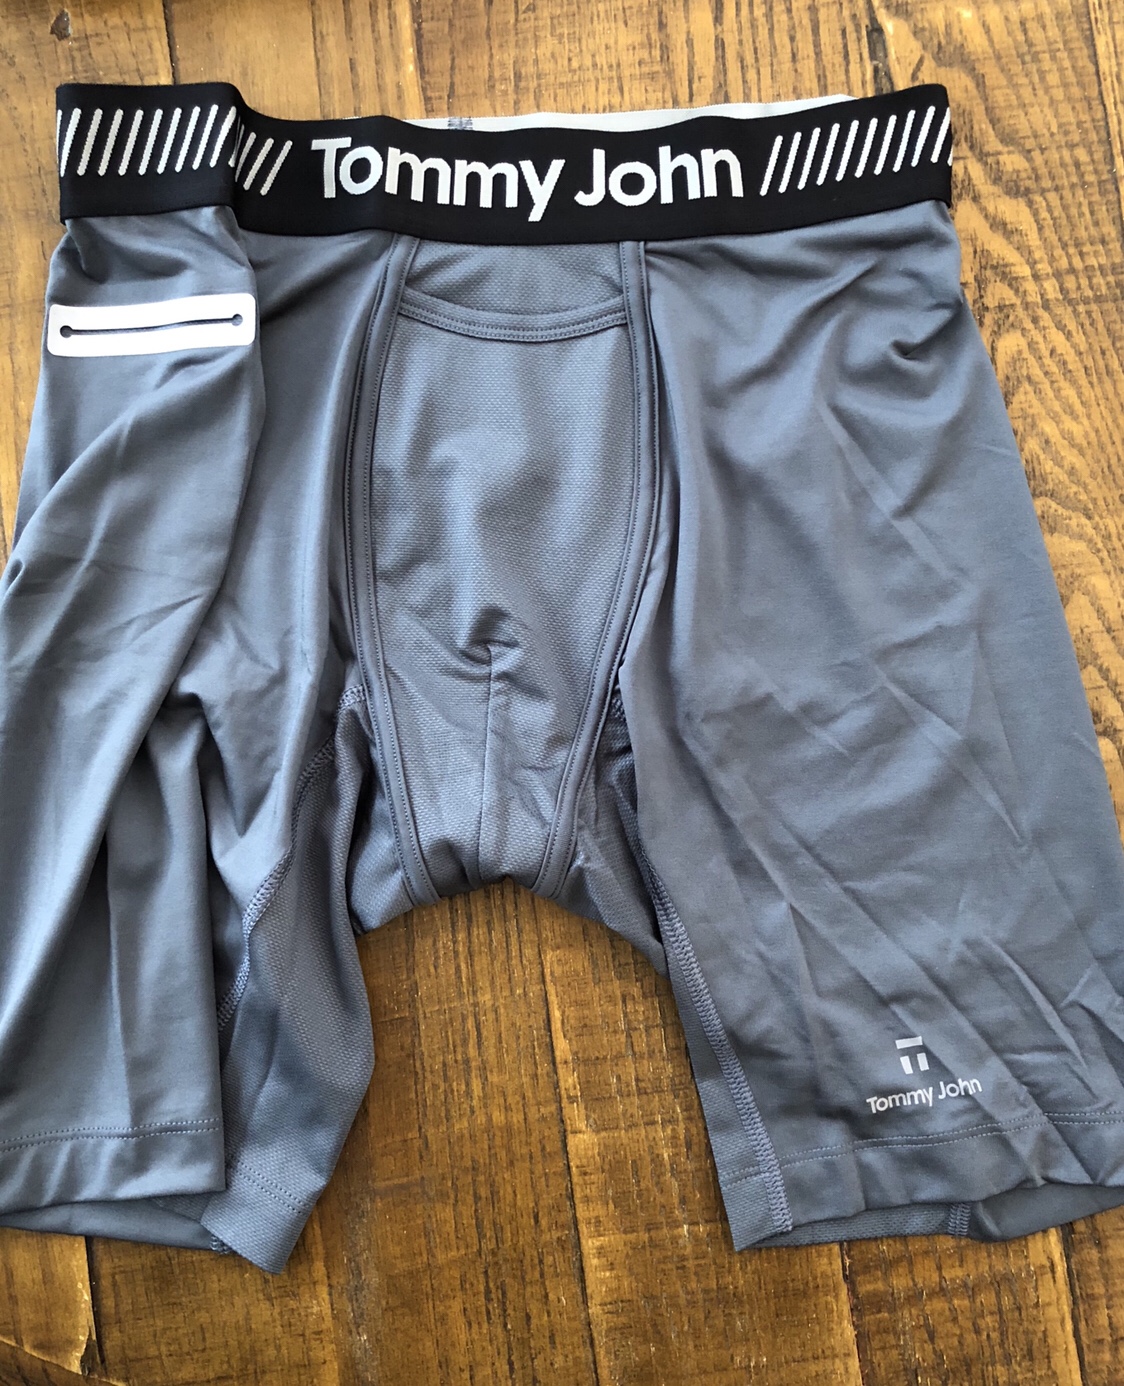 reviews of tommy john underwear